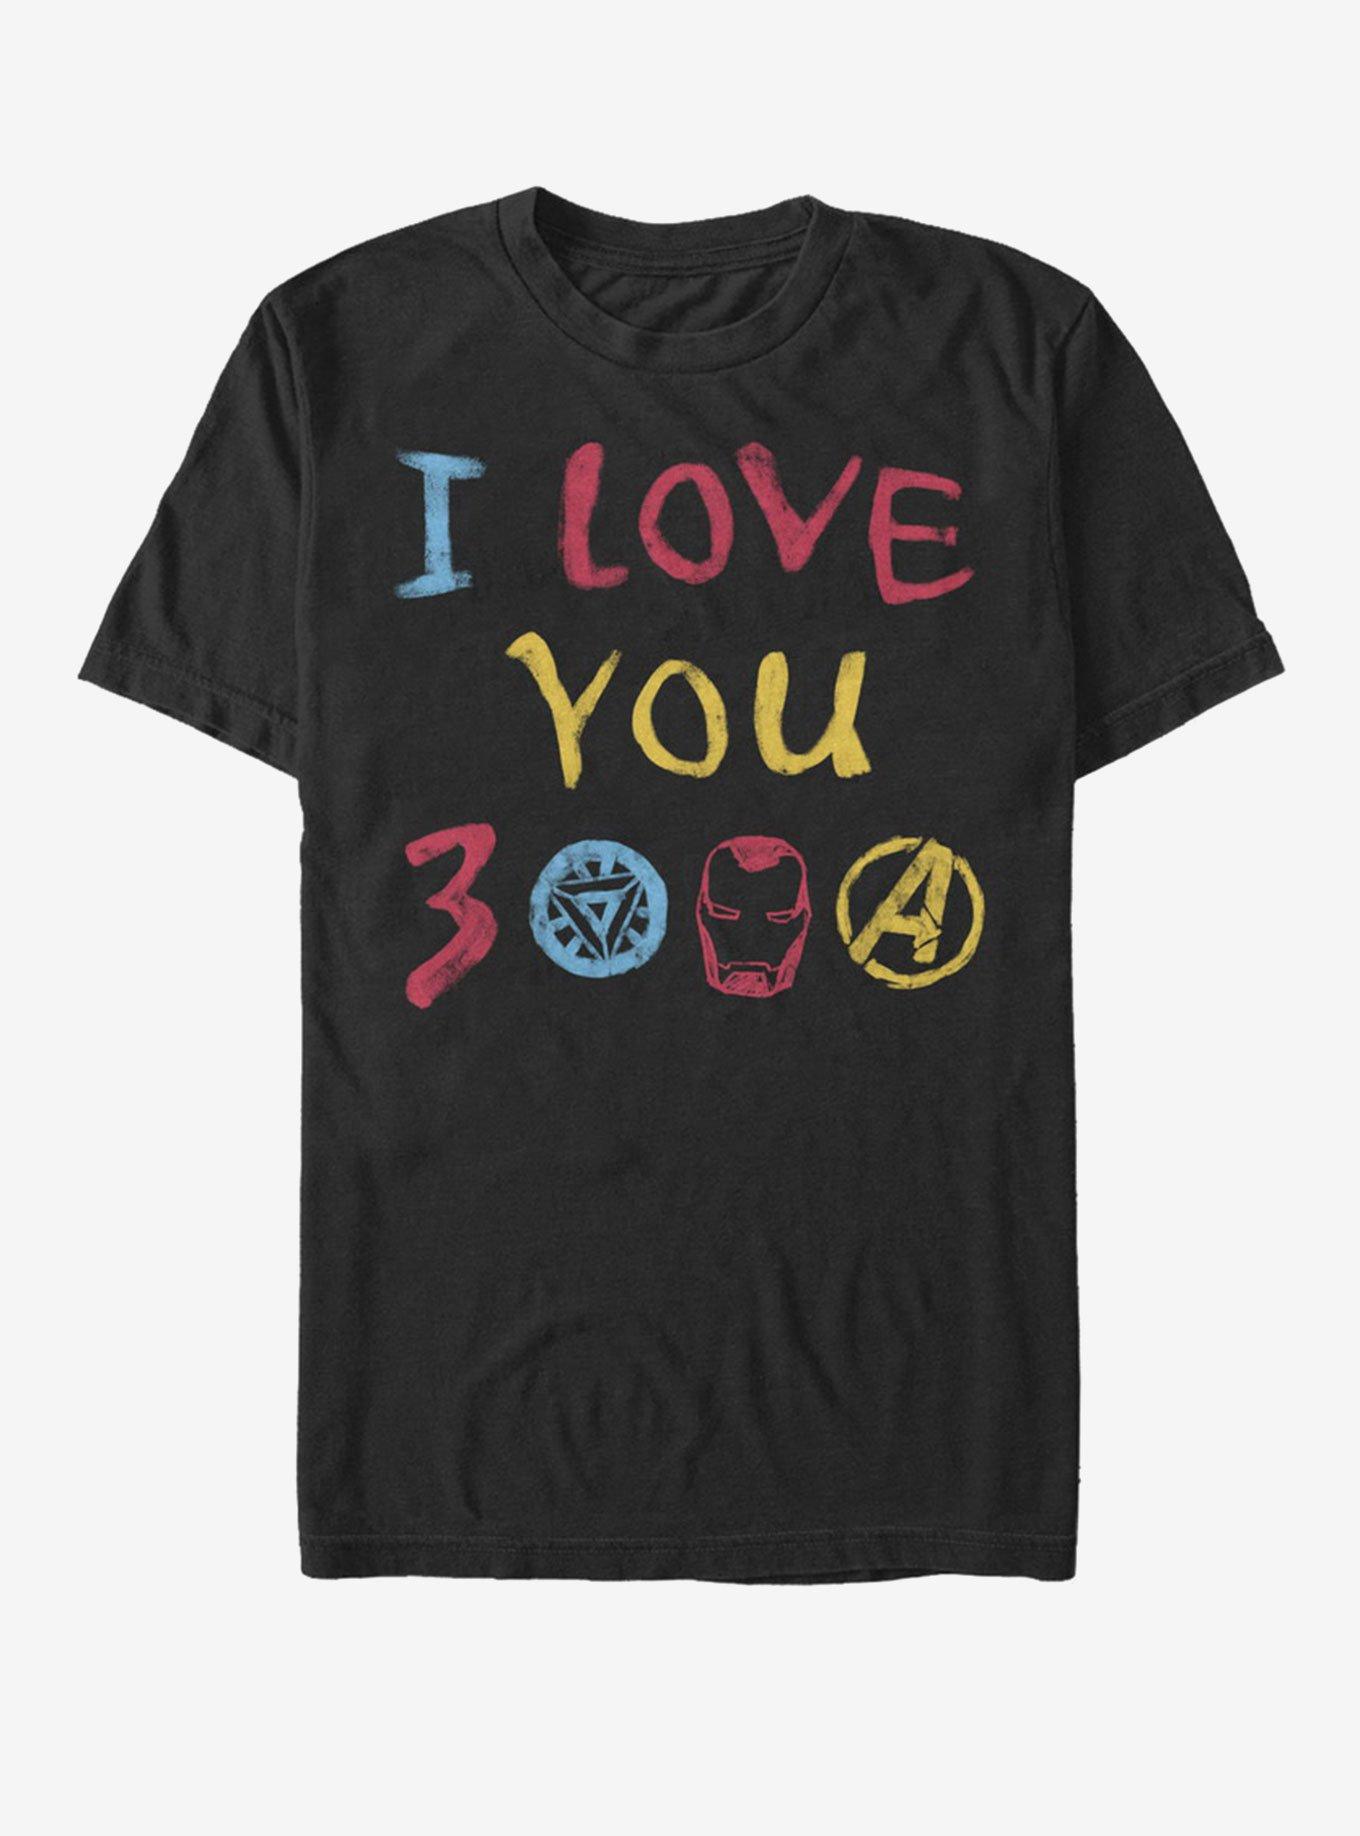 Marvel Avengers: Endgame Love Hand Drawn T-Shirt